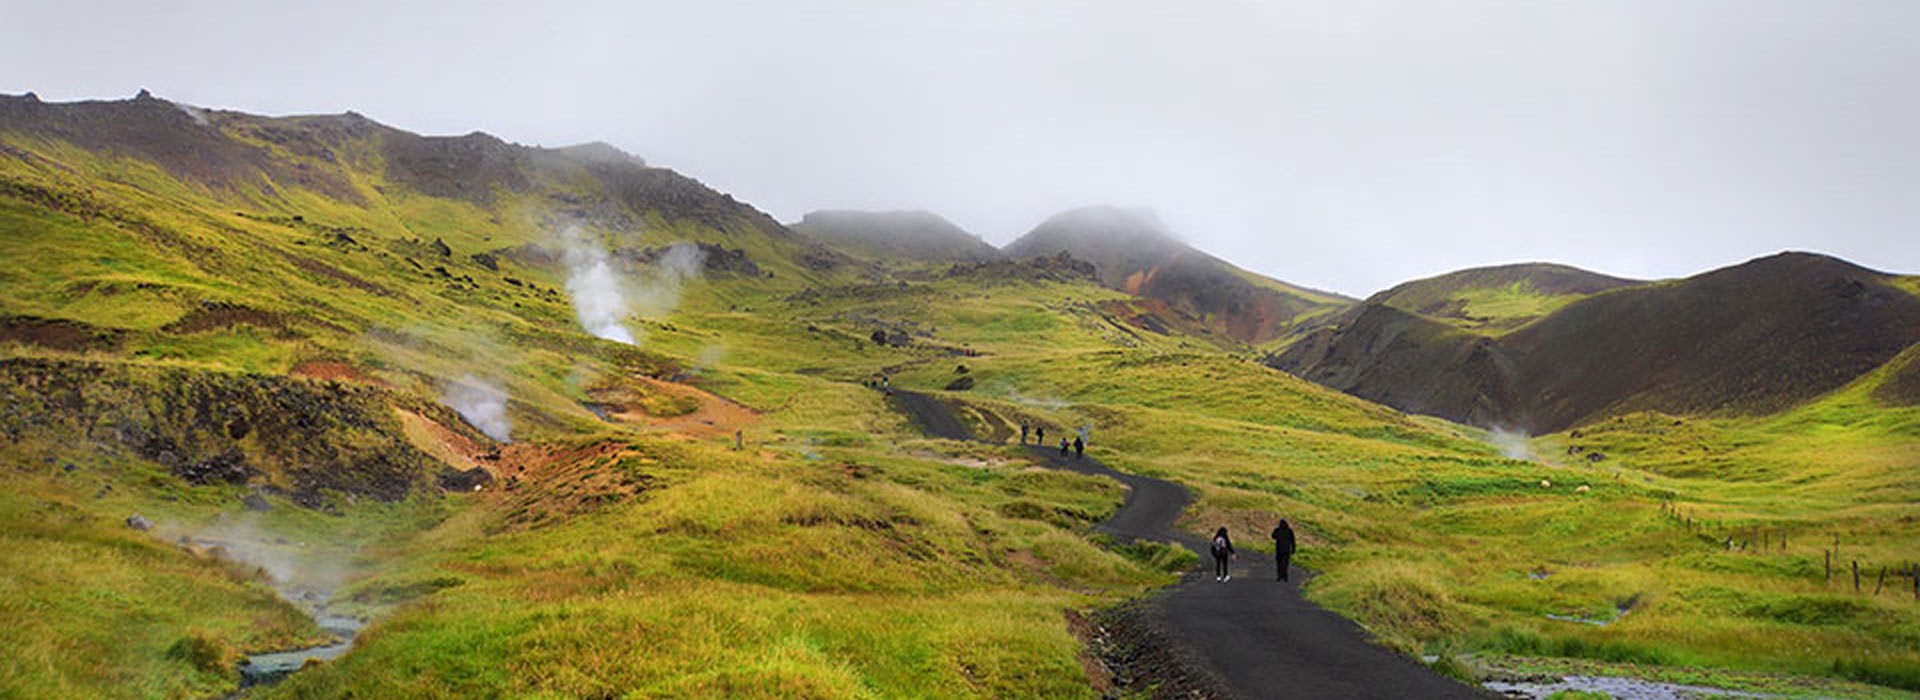 Visiter La Vallée de Reykjadalur  - Islande